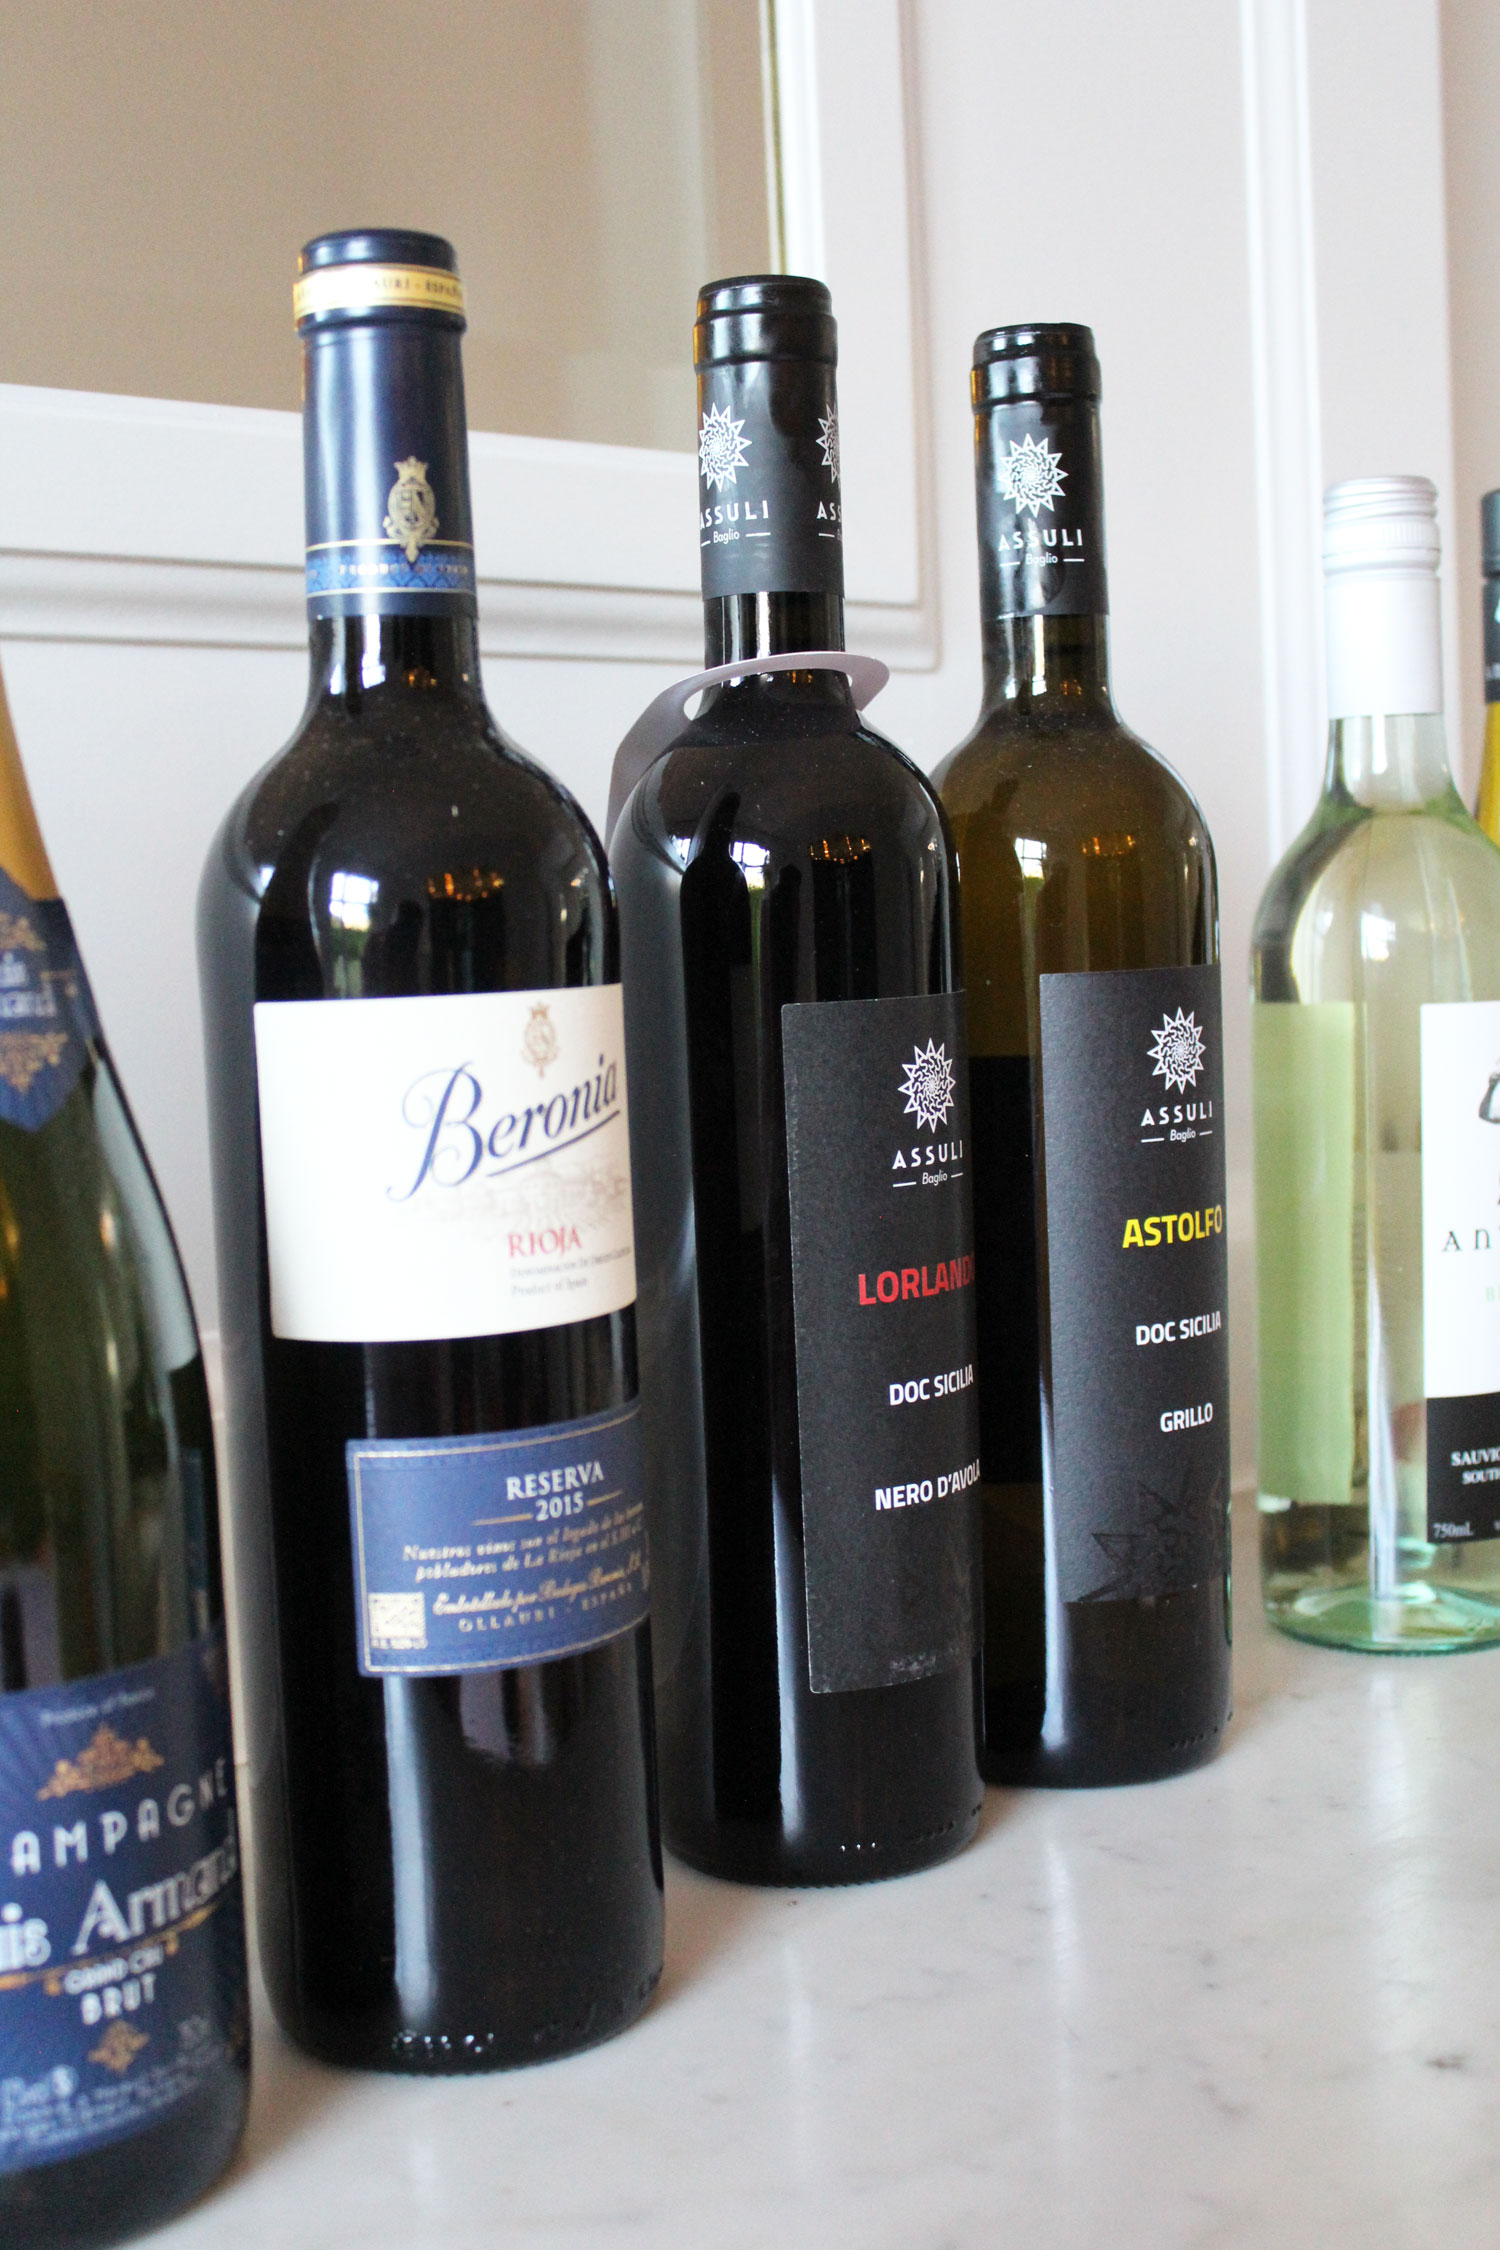 GETEST: Your Wine Online. Eén van de grootste Belgische online wijnwinkels